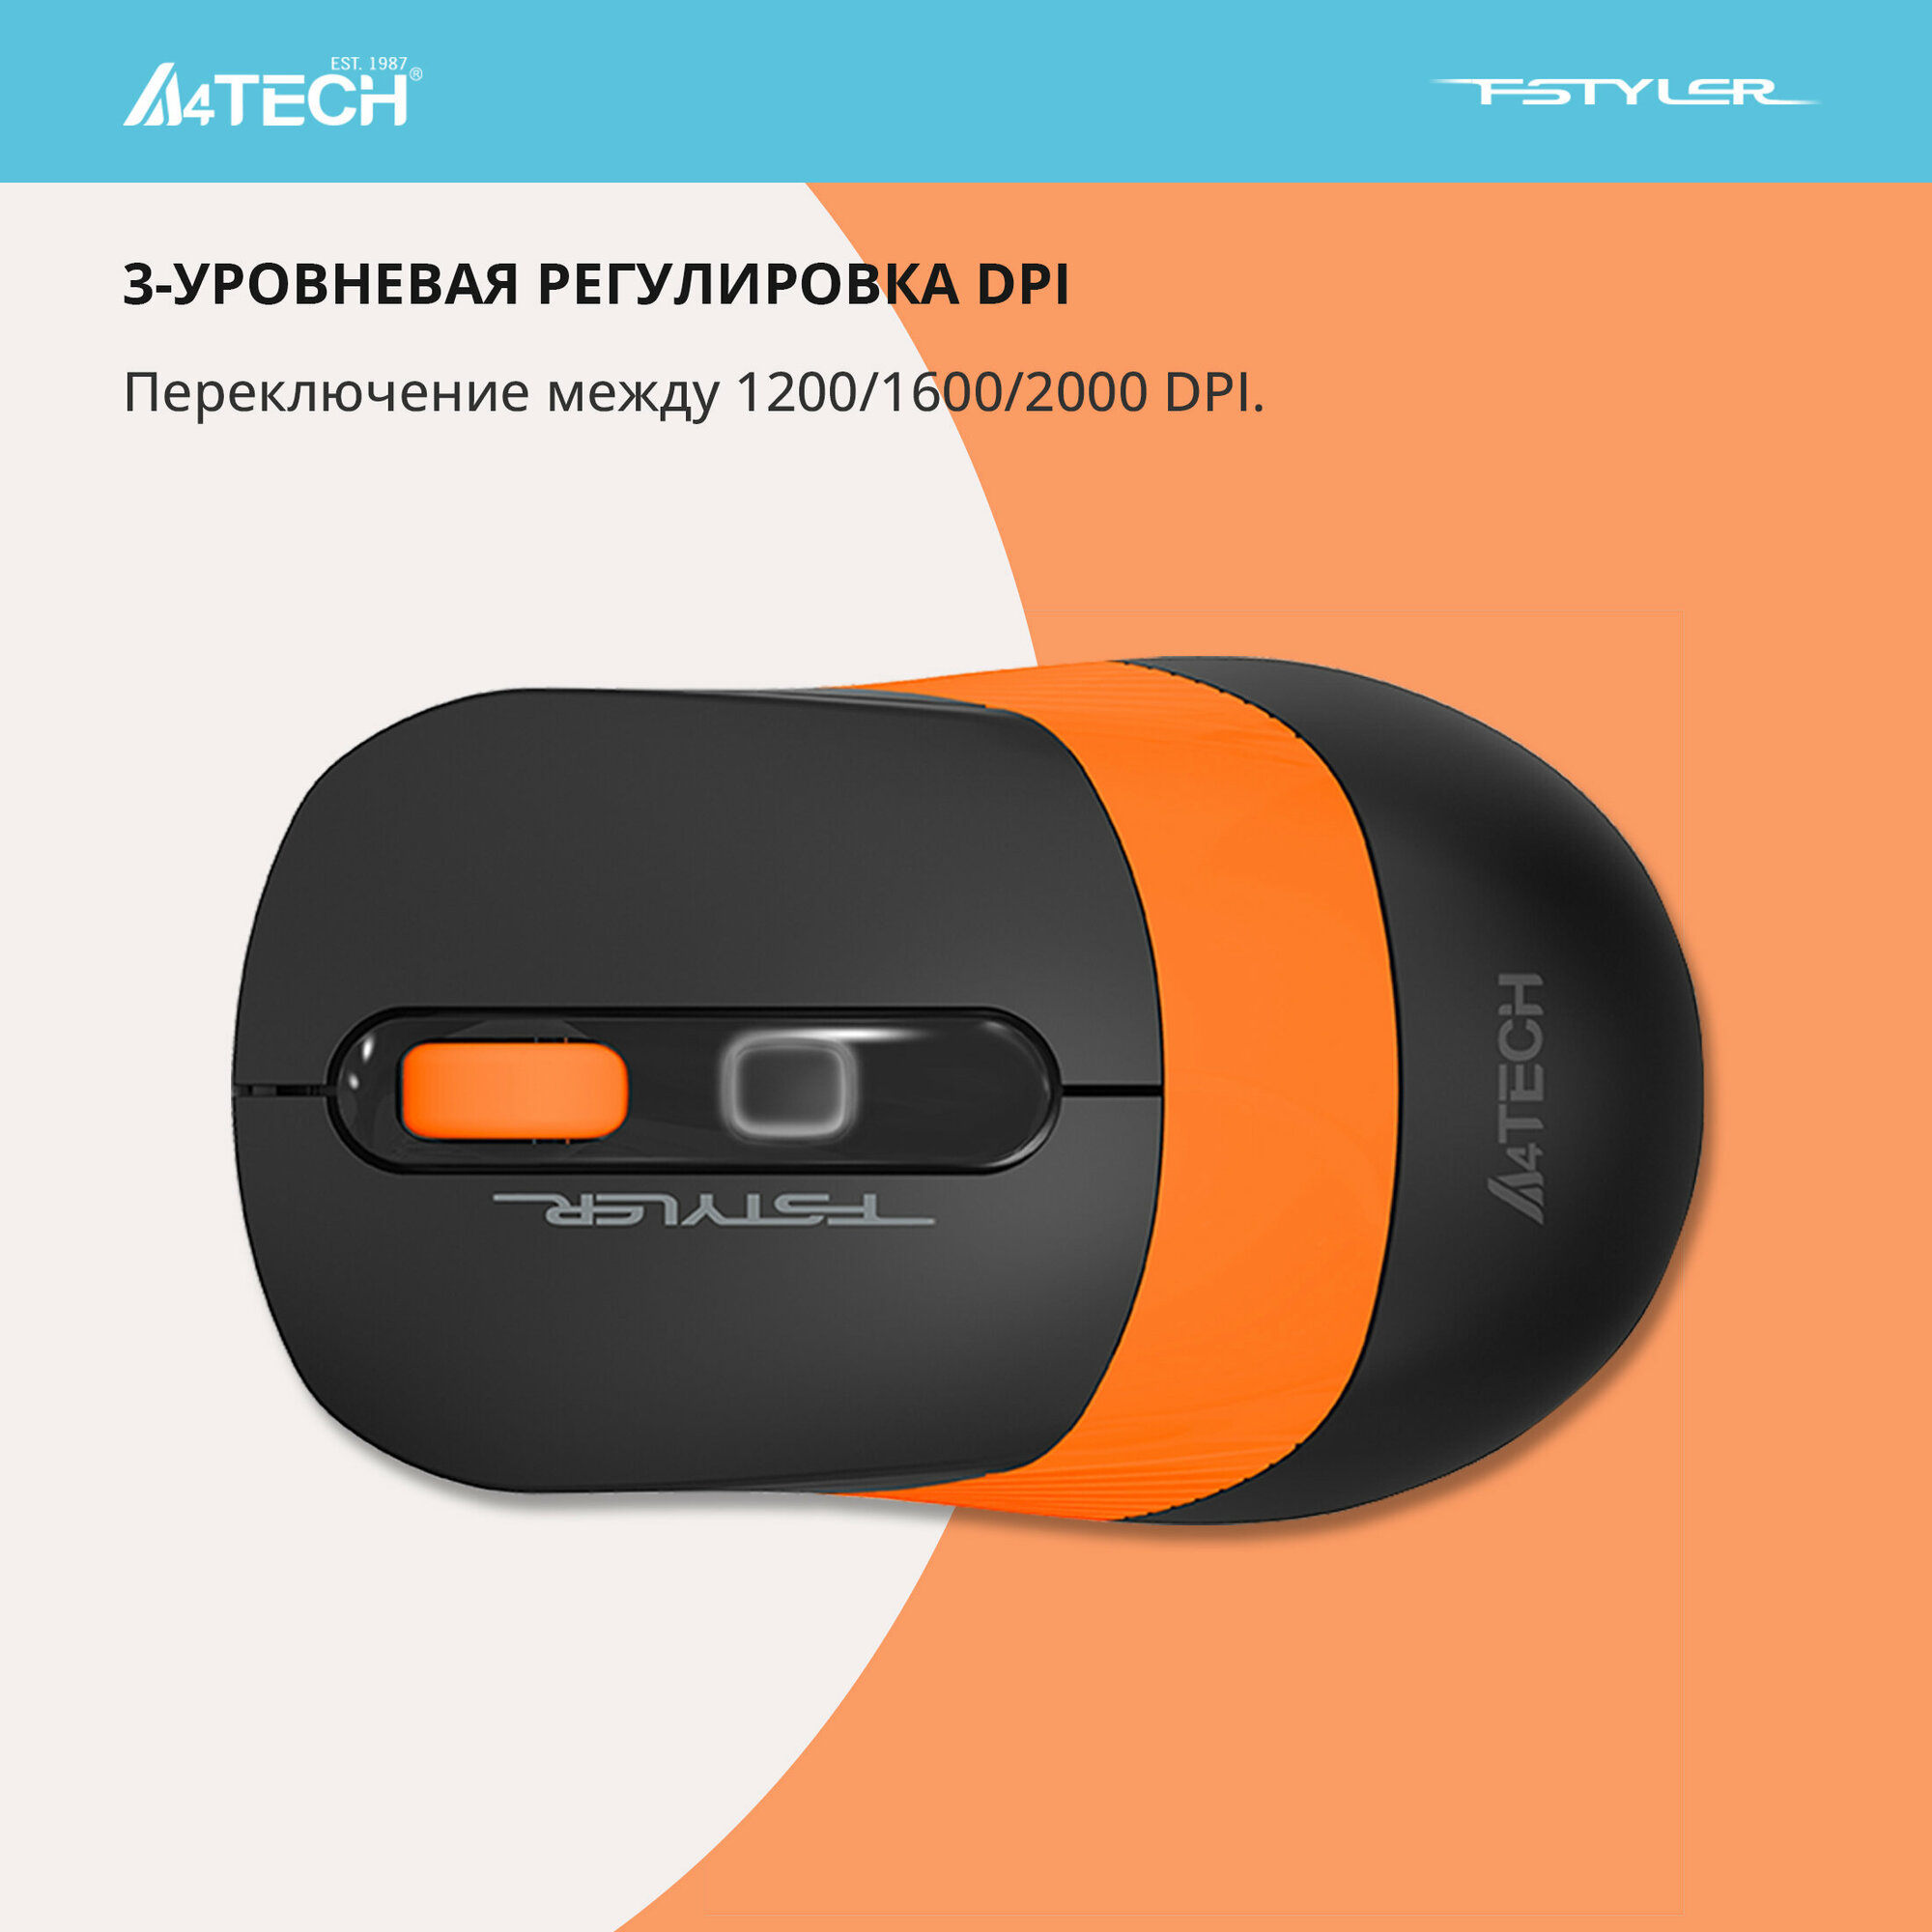 Мышь A4 Fstyler FG10 черный/оранжевый оптическая (2000dpi) беспроводная USB (4but)